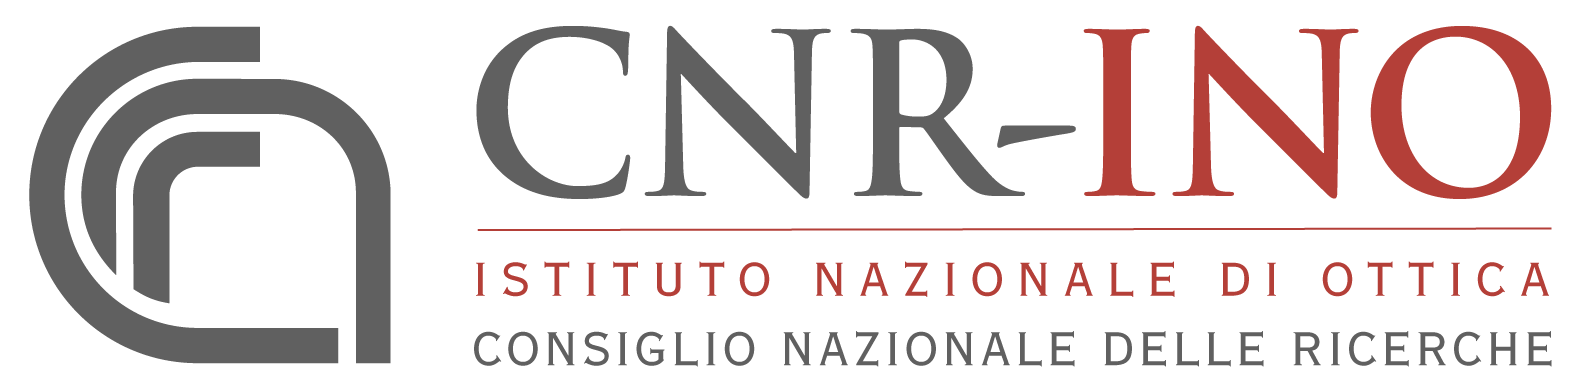 Istituto Nazionale di Ottica CNR-INO